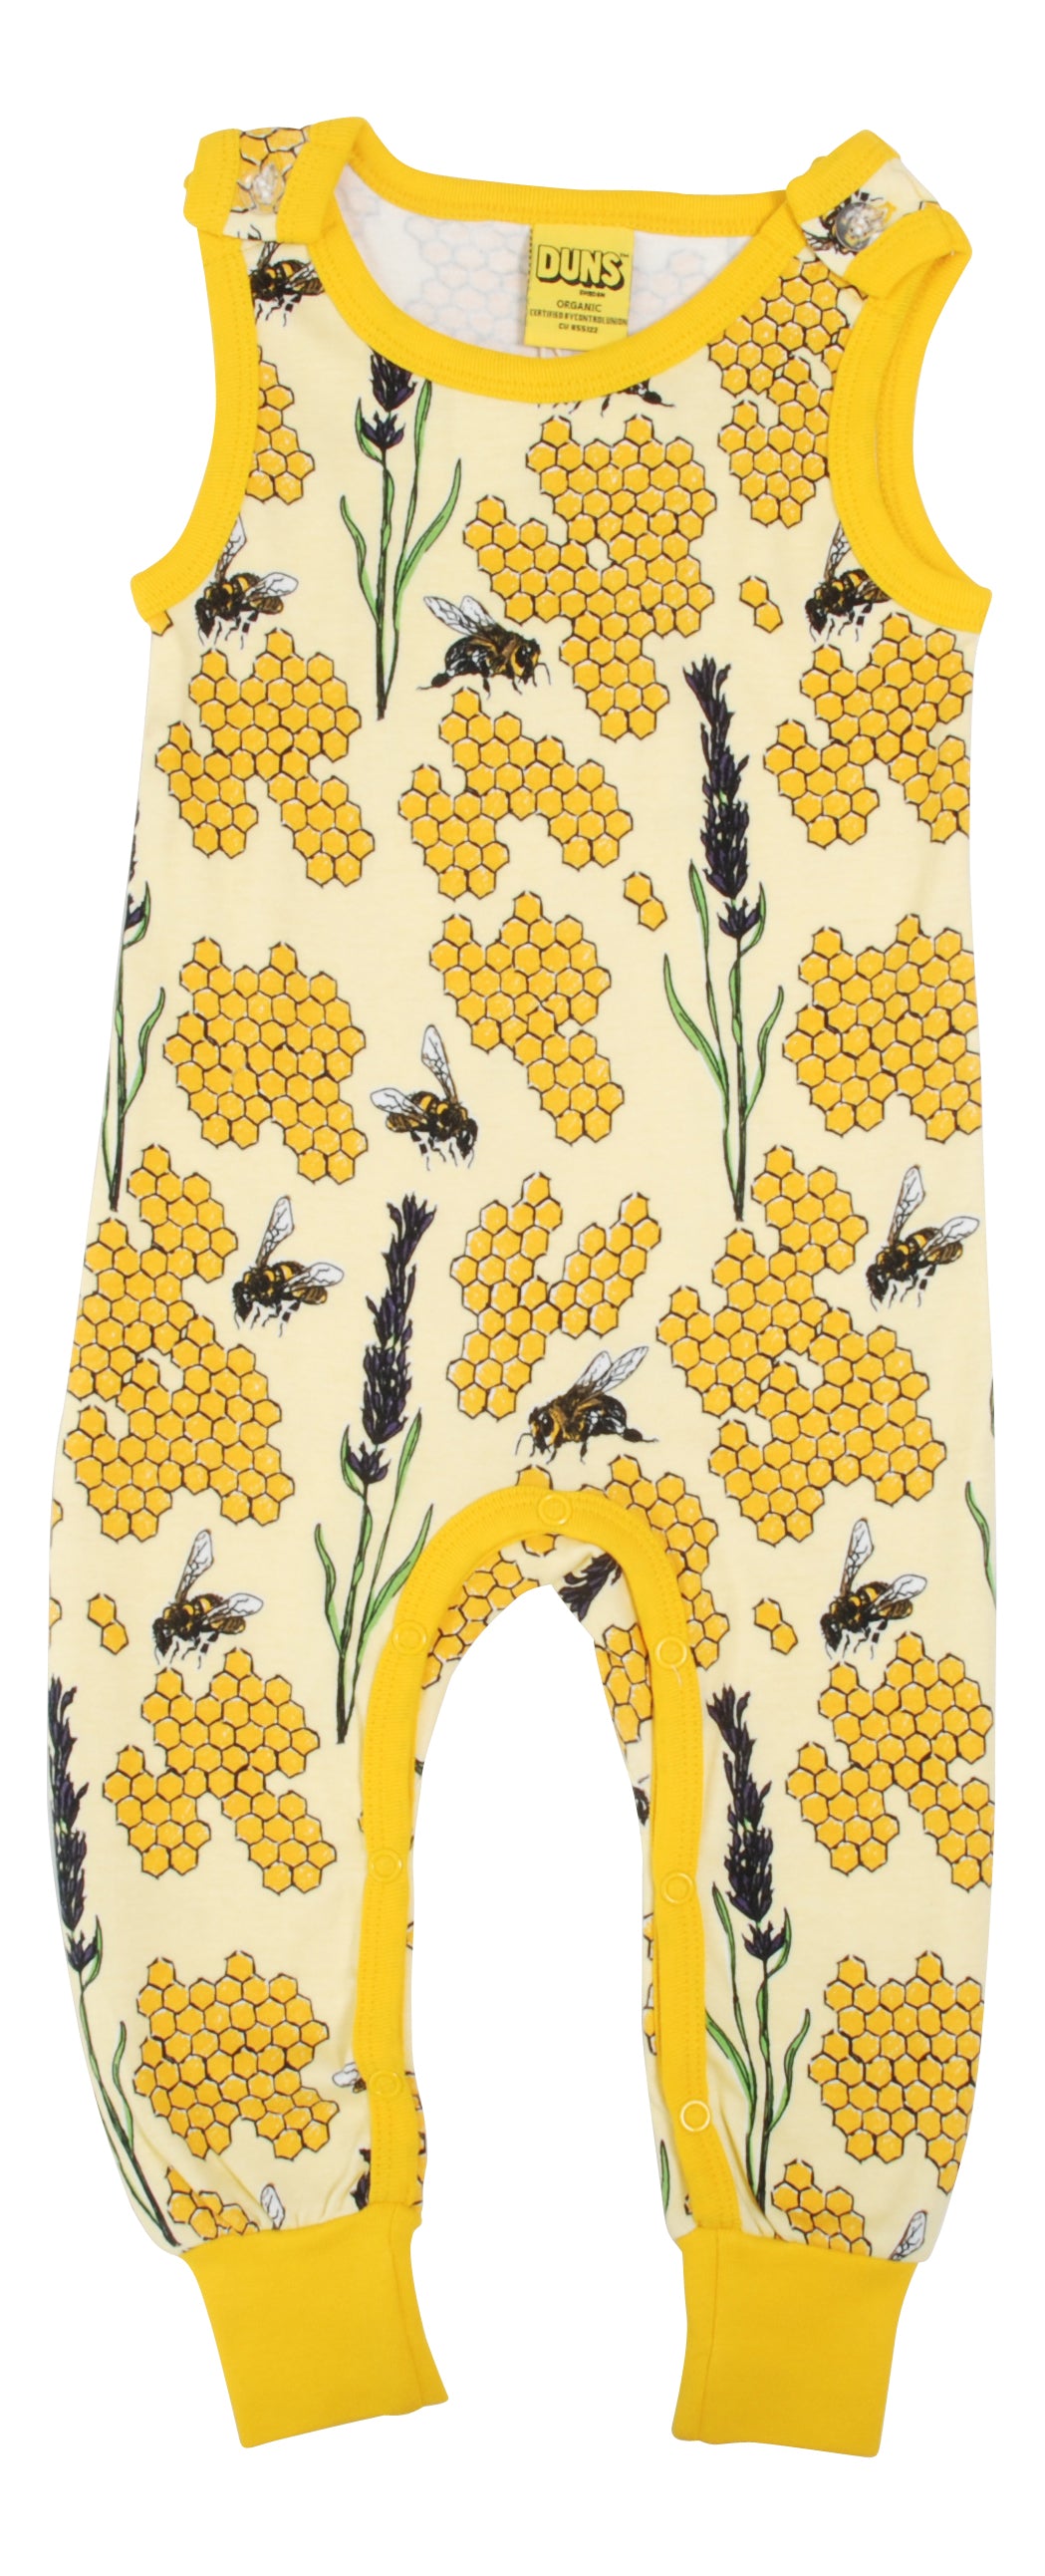 Duns Sweden - Playsuit Bee Yellow - Dungaree Bijen Geel